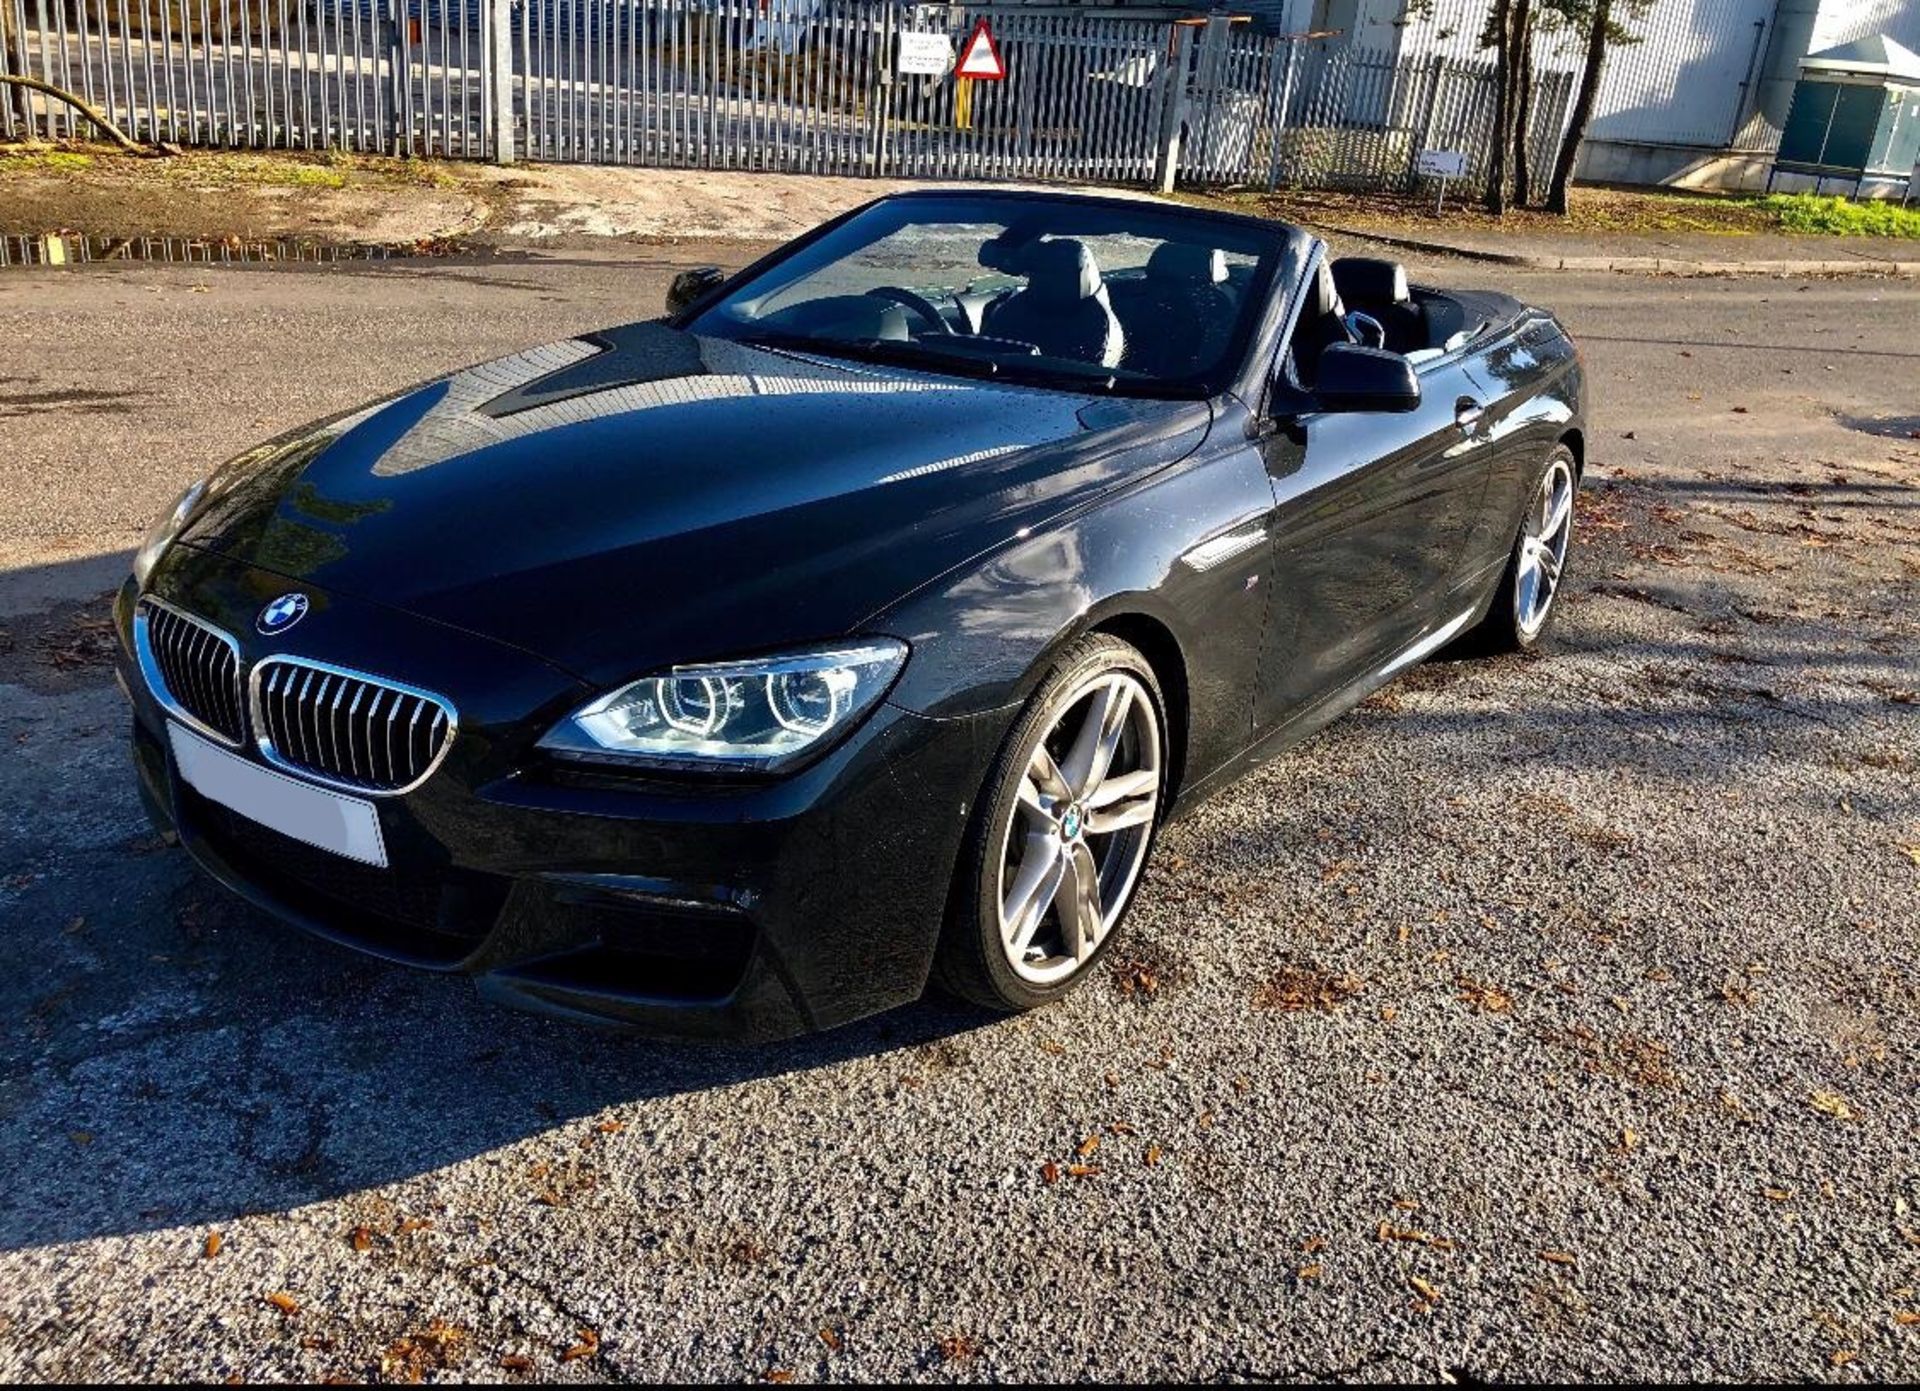 2014/14 REG BMW 640D M SPORT AUTOMATIC 3.0 DIESEL BLACK CONVERTIBLE *NO VAT* - Image 2 of 14